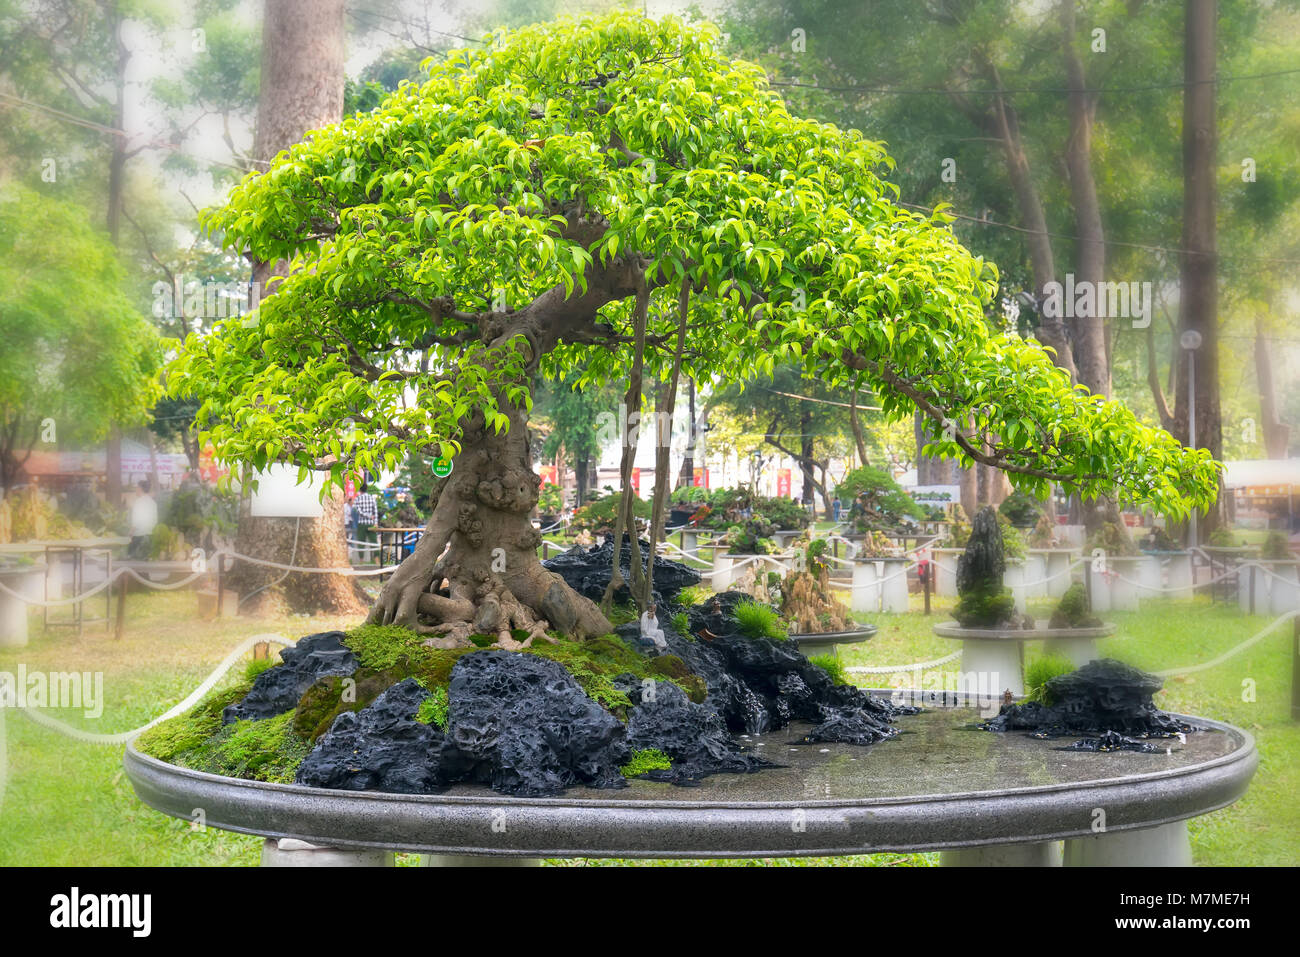 Grüne Bonsai Baum im Topf oder Fach werk in Gestalt der Stammzellen ist so geformt, dass Handwerker schöne Kunst in der Natur erstellen Stockfoto